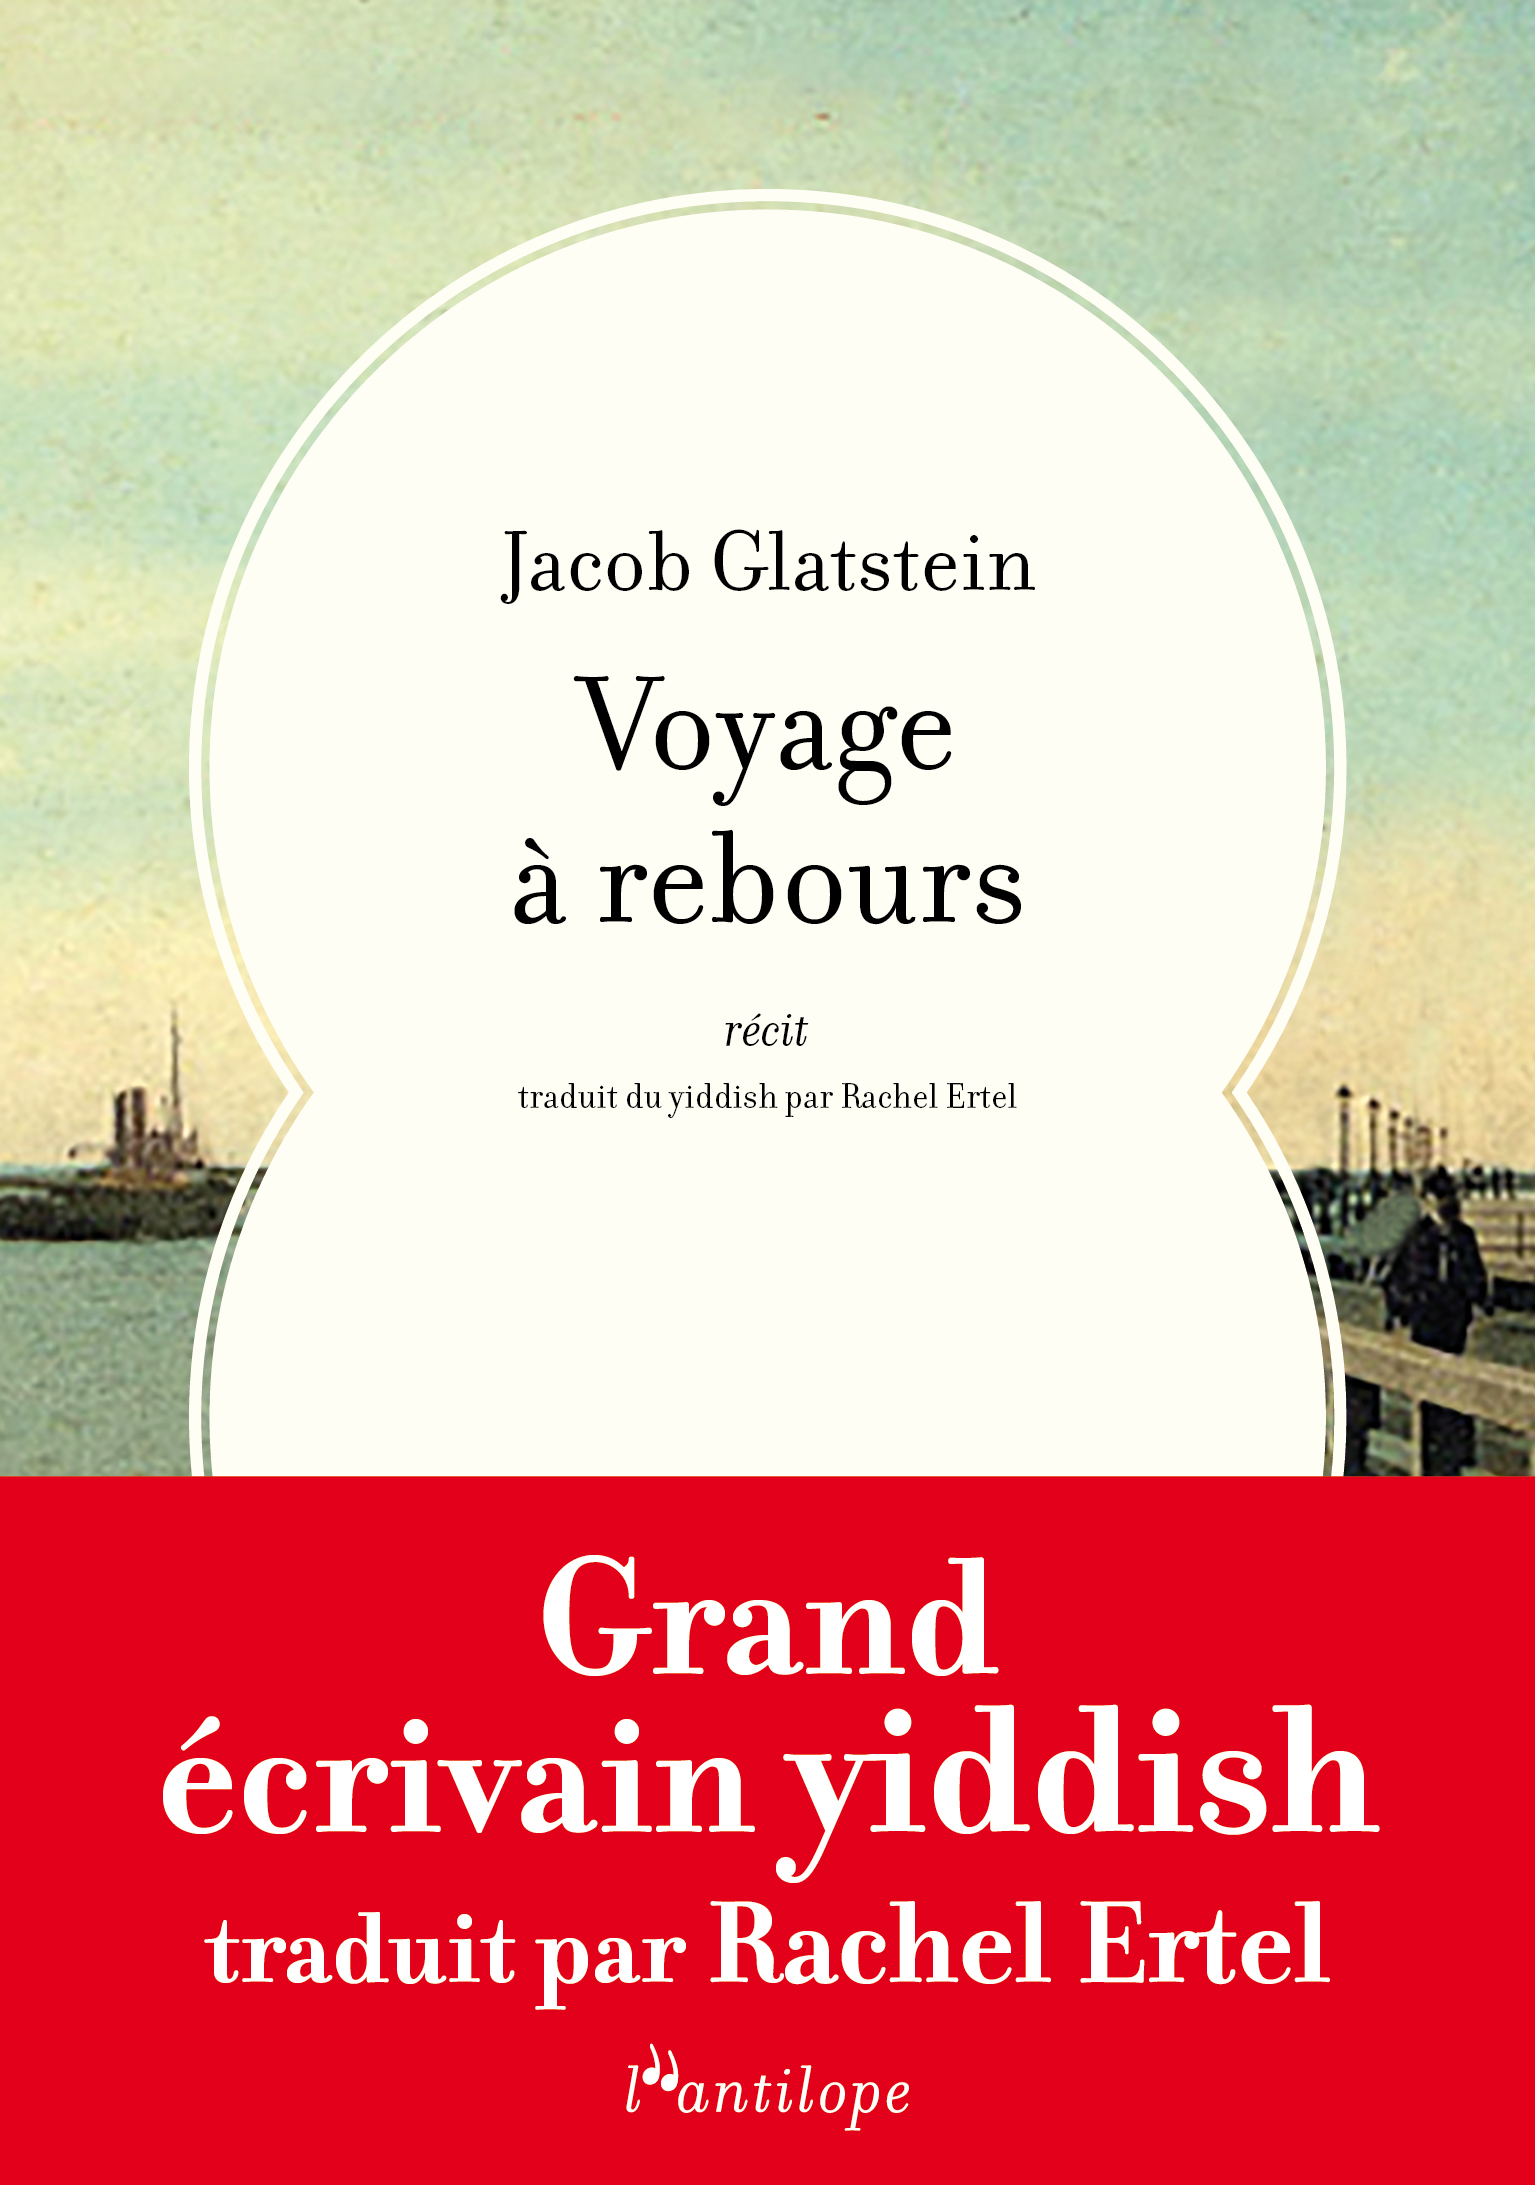 "Voyage à rebours", Jacob Glatstein, traduit du yiddish par Rachel Ertel, L'antilope, 5 janvier 2023